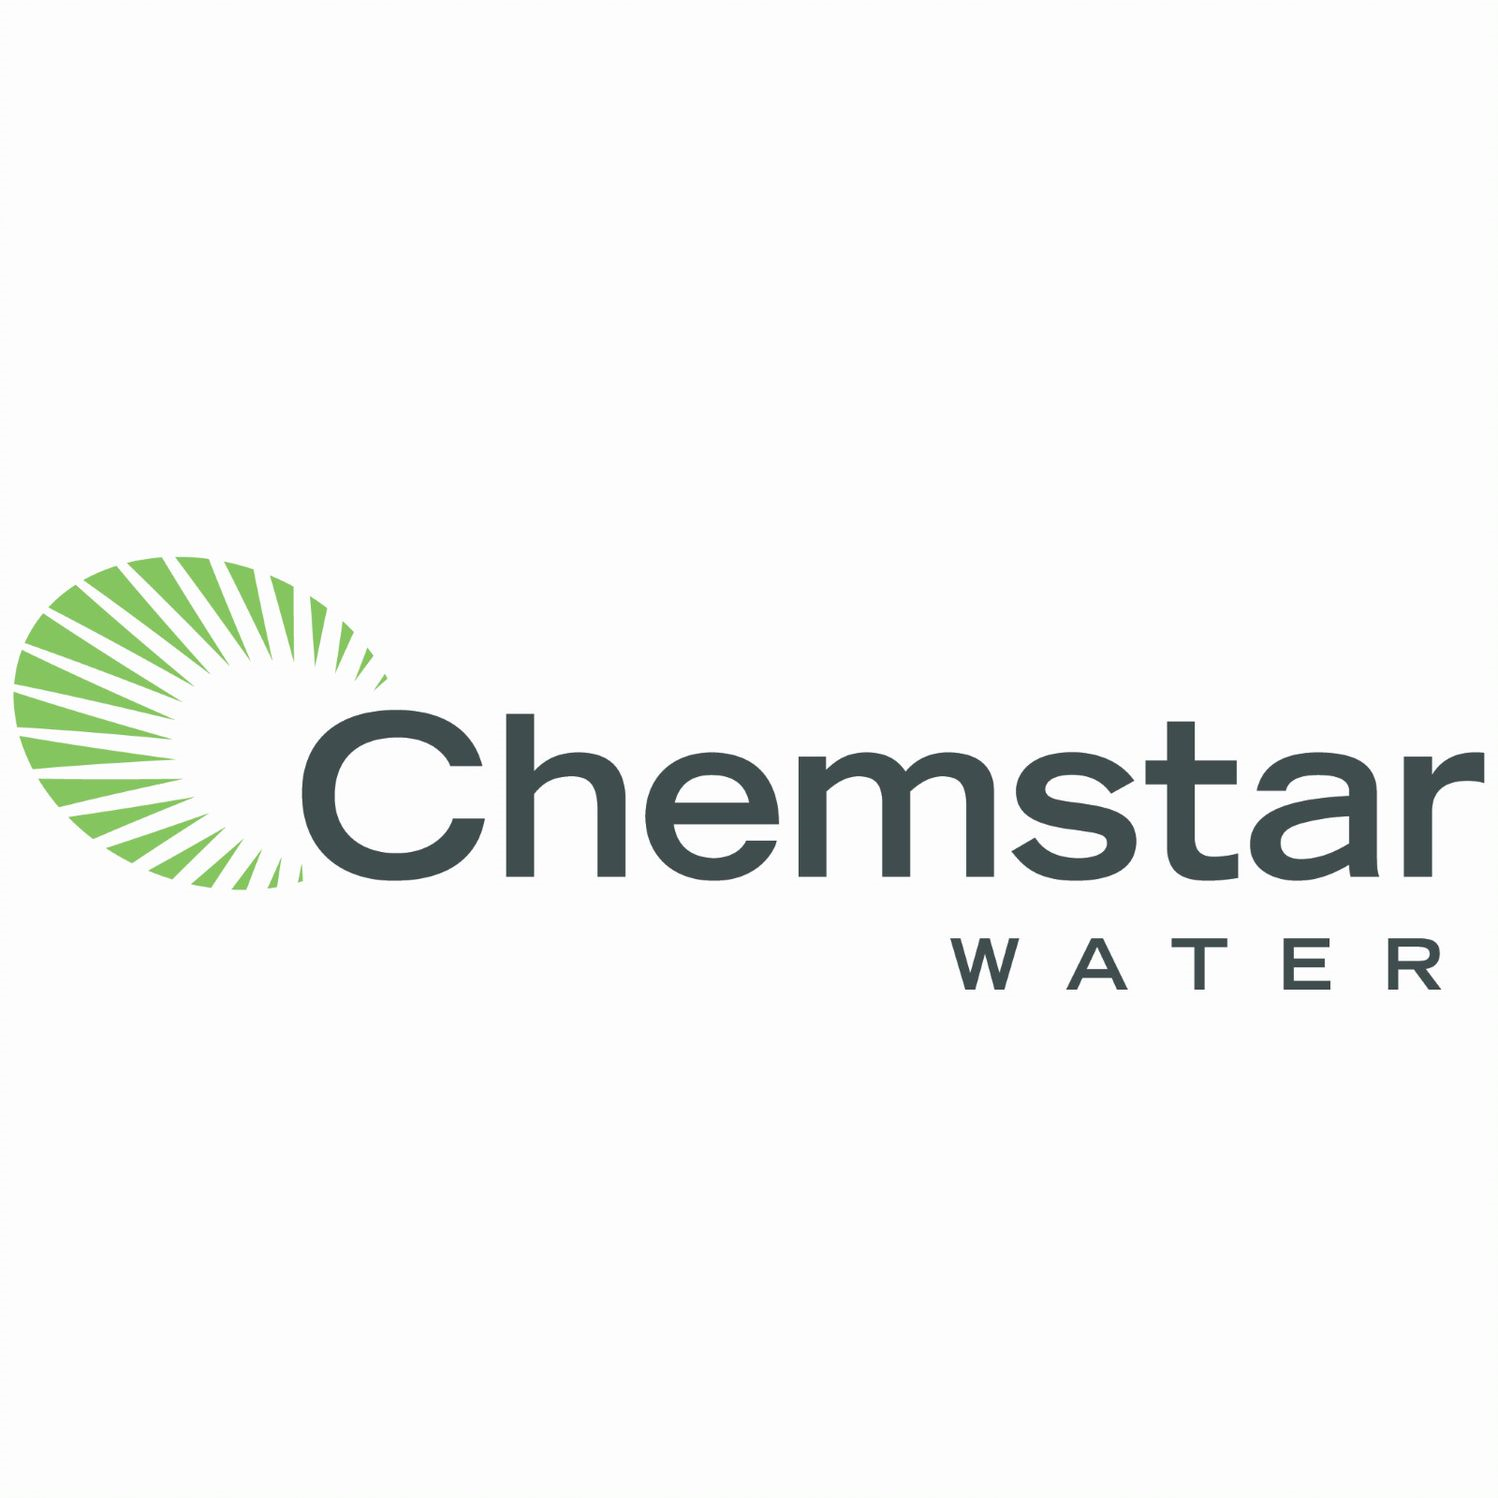 Chemstar WATER logo